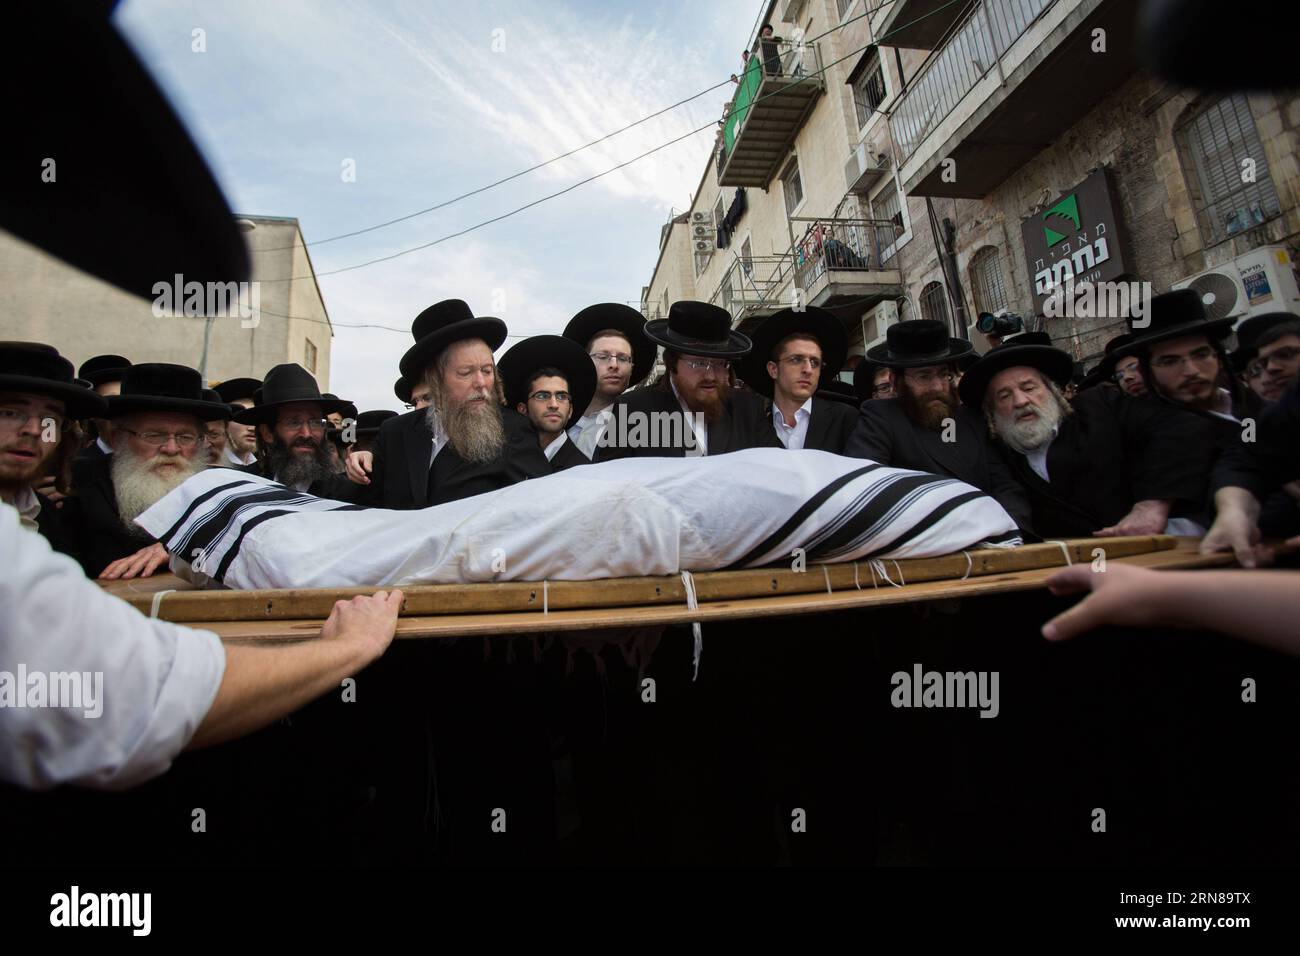 (151013) -- JÉRUSALEM, 13 octobre 2015 -- des juifs ultra-orthodoxes portent le corps du rabbin Yishayahu Karishevsky lors de ses funérailles dans le quartier de Mea Shearim, Jérusalem, le 13 octobre 2015. Un palestinien a percuté un véhicule portant le logo de la compagnie nationale de télécommunications, Bezeq, contre une foule de navetteurs qui attendaient à une gare routière dans un autre quartier de la ville. Il est ensuite sorti de son véhicule, poignardant des gens, avant d'être abattu, a déclaré la porte-parole de la police Luba Samri. Yishayahu Karishevsky, un israélien d'une soixantaine d'années, a été déclaré mort par les ambulanciers paramédicaux sur les lieux, et trois autres p Banque D'Images